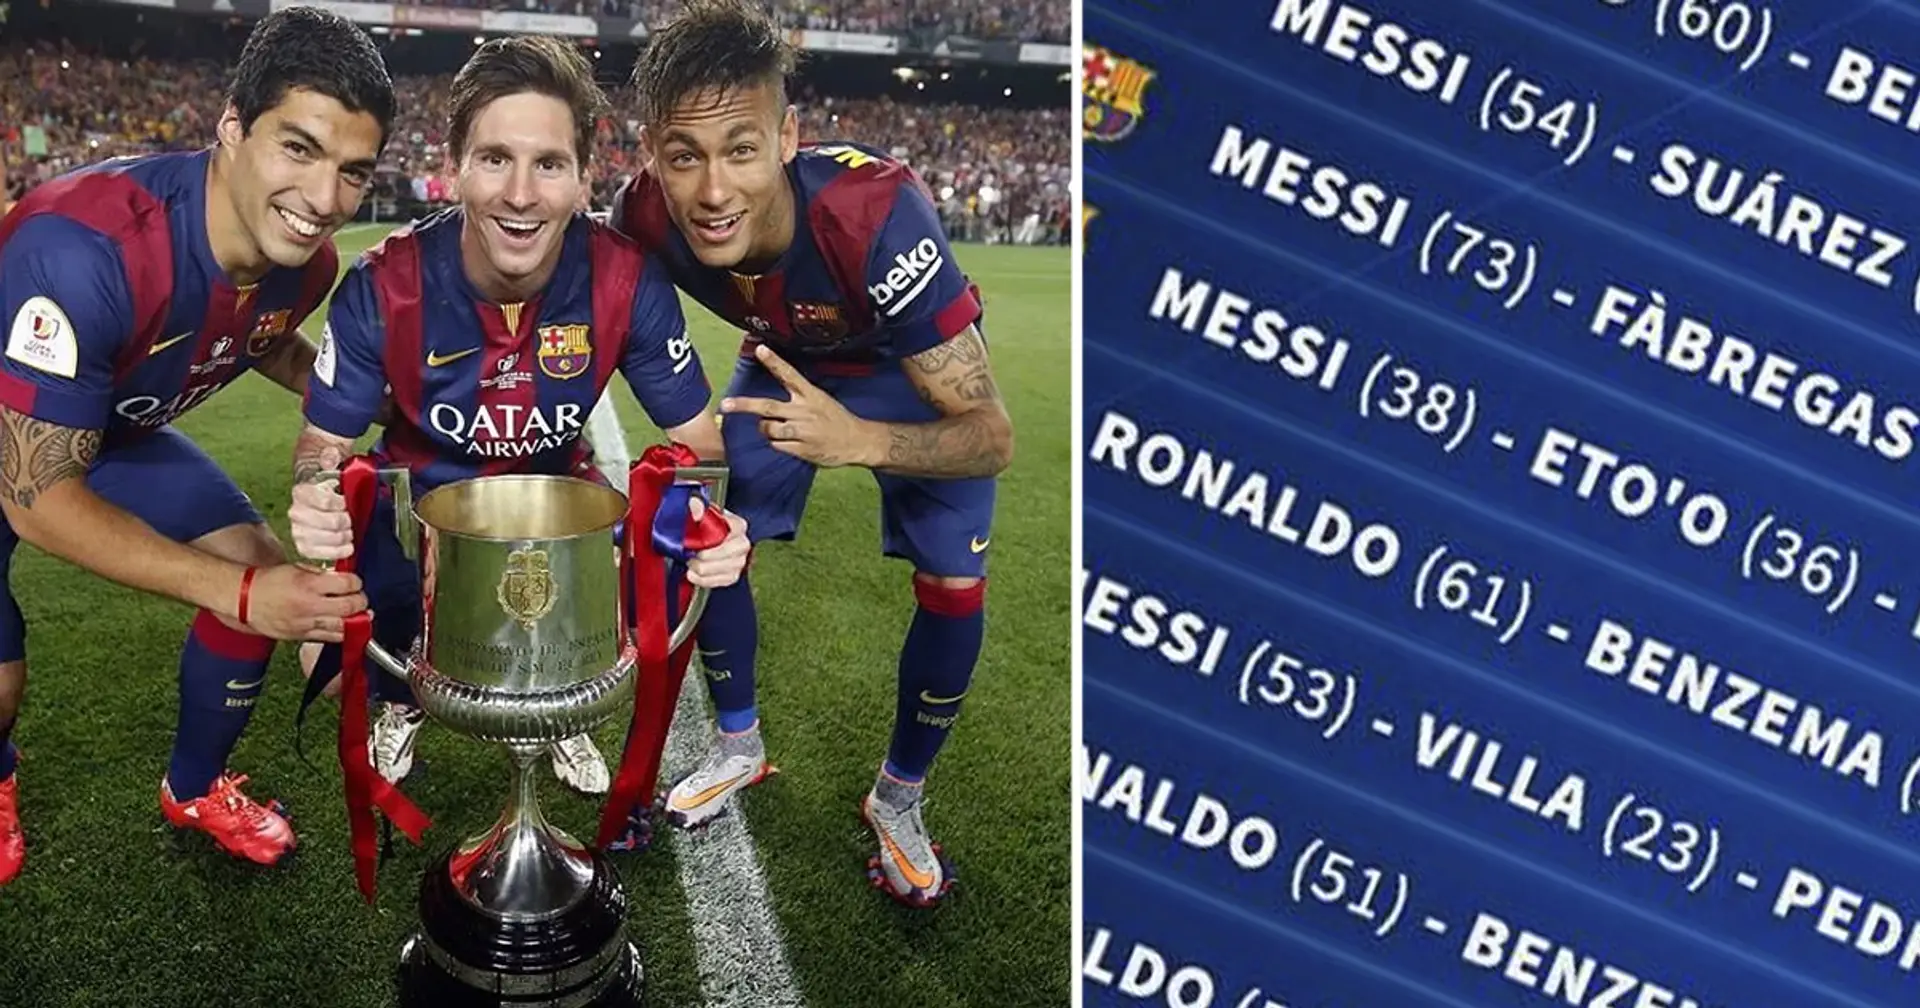 10 trios les mieux notés du 21e siècle révélés – Messi apparaît 6 fois dans le classement